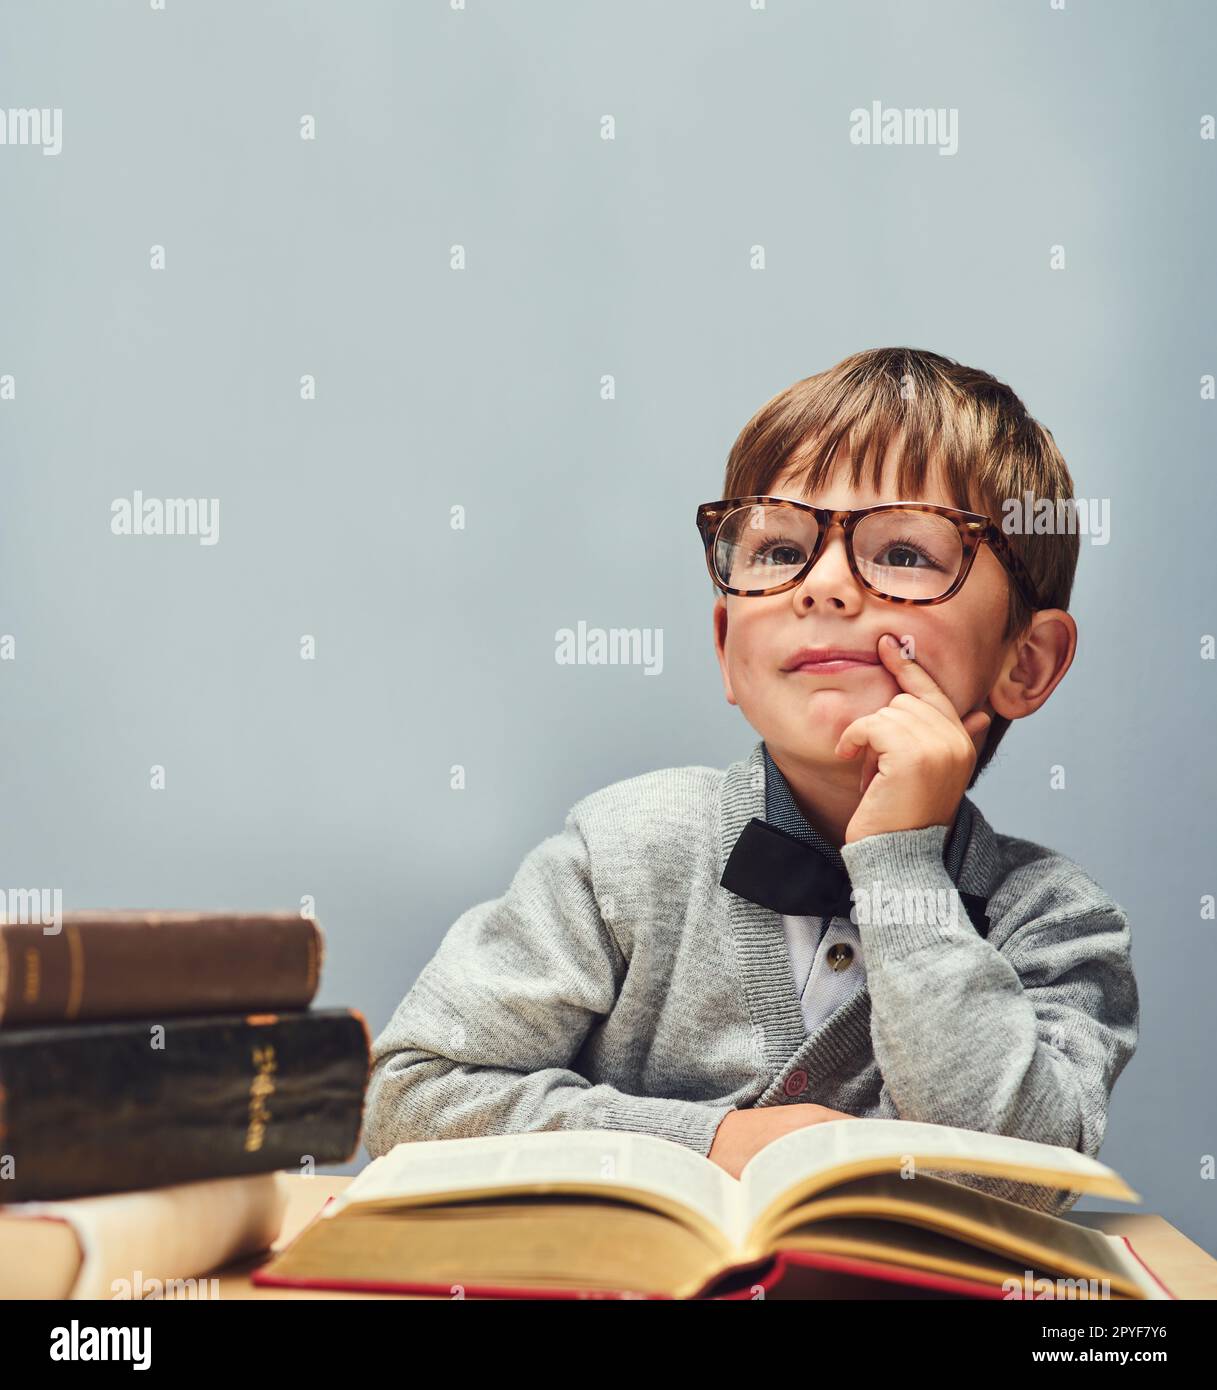 Die Zukunft gehört den Neugierigen. Studioaufnahme eines kleinen Jungen, der Bücher liest und vor grauem Hintergrund nachdenklich aussieht. Stockfoto